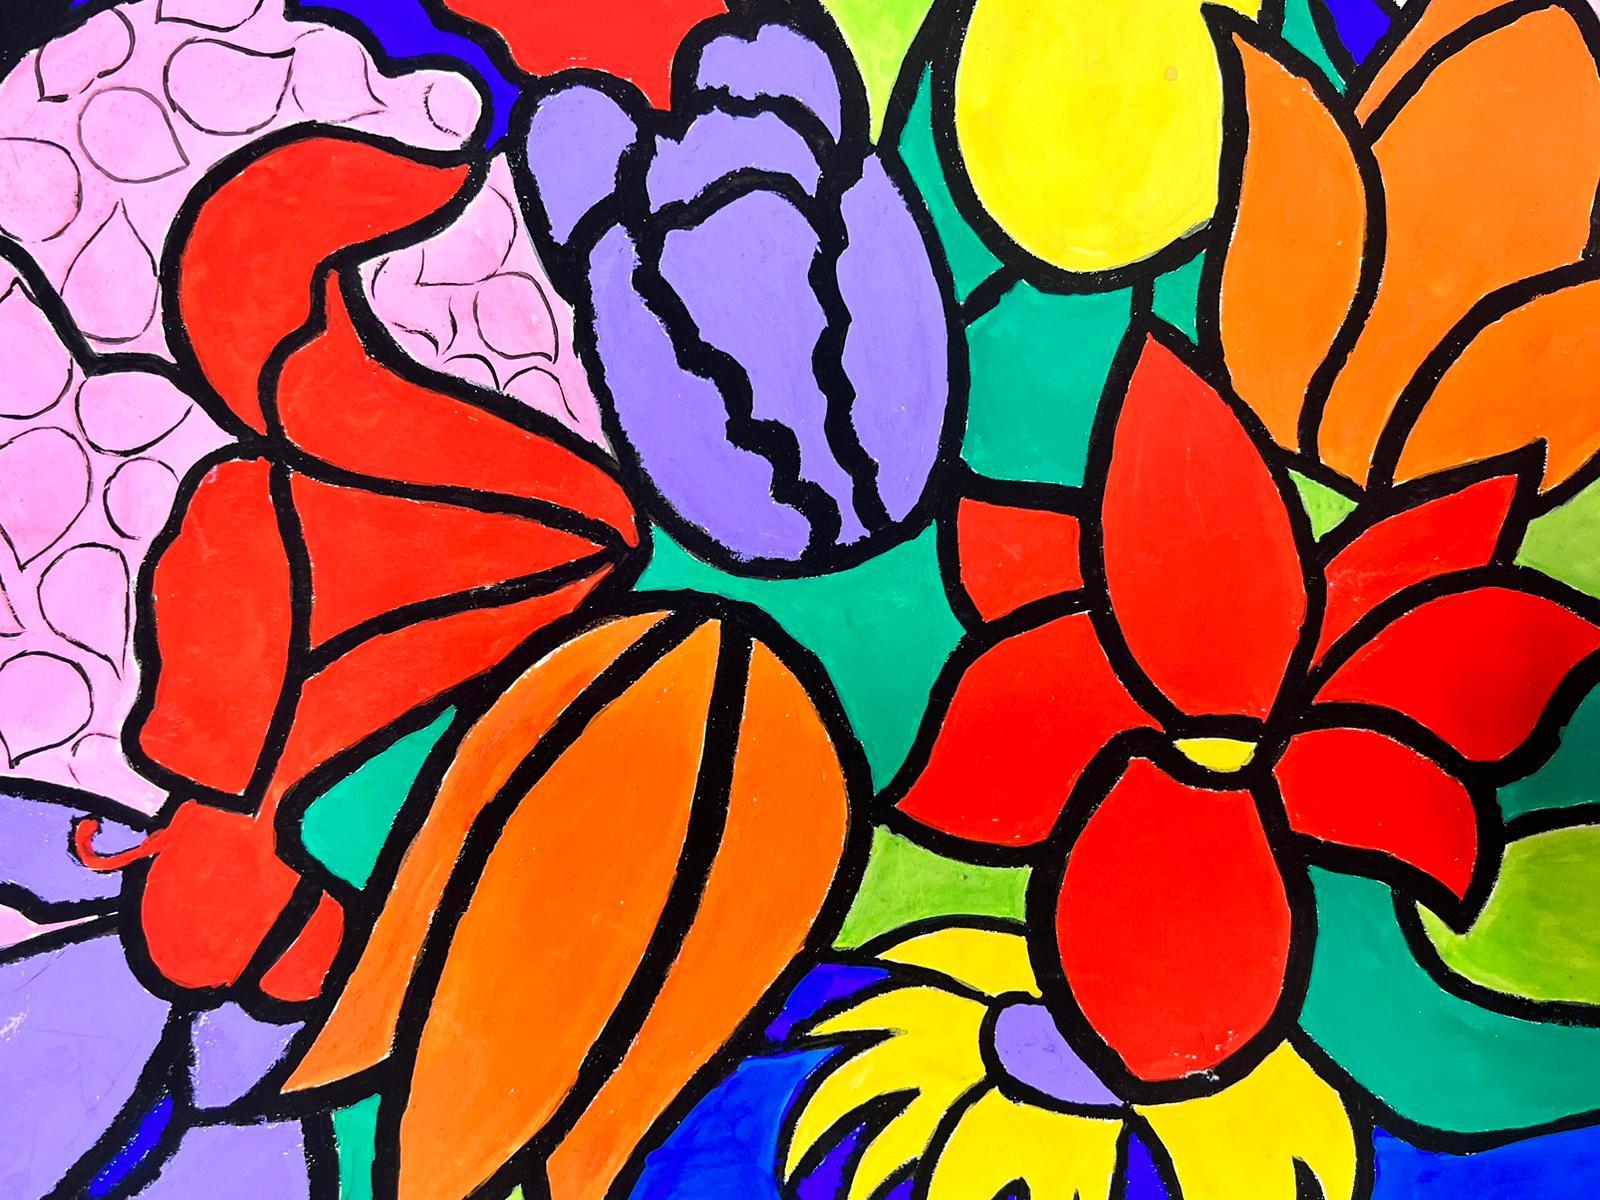 Florales Glasfenster
von Josine Vignon (Französisch 1922-2022) 
unterzeichnet
Pastell/Aquarell auf Papier, ungerahmt
Gemälde: 13 x 19,5 Zoll
guter Zustand
Herkunft: aus dem Nachlass des Künstlers, Frankreich

Josine Vignon (1922-2022) war eine